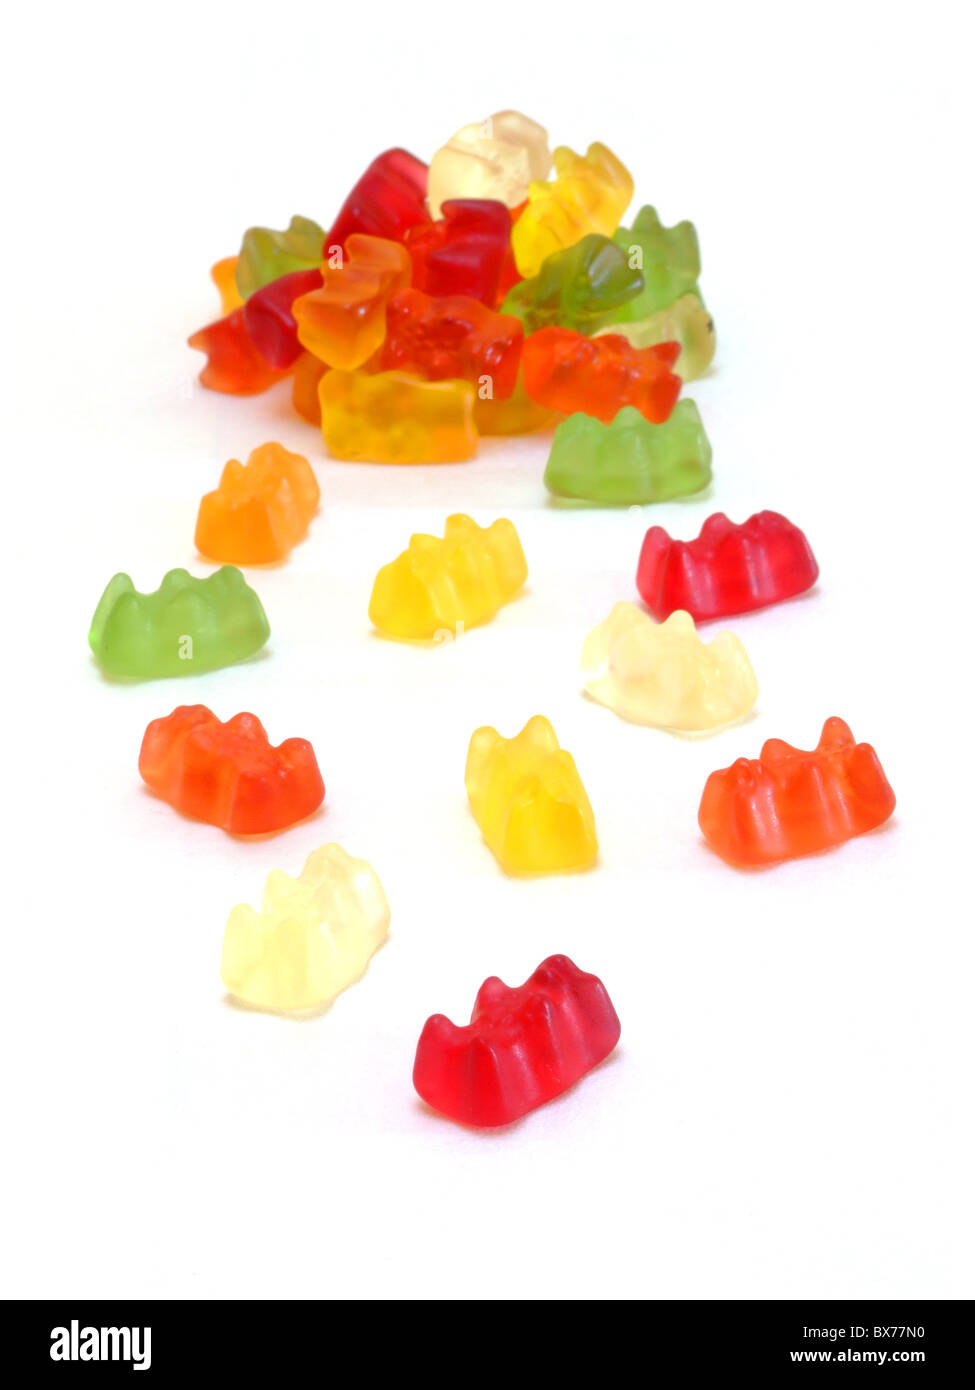 Gummibärchen / Gummy bears Stock Photo